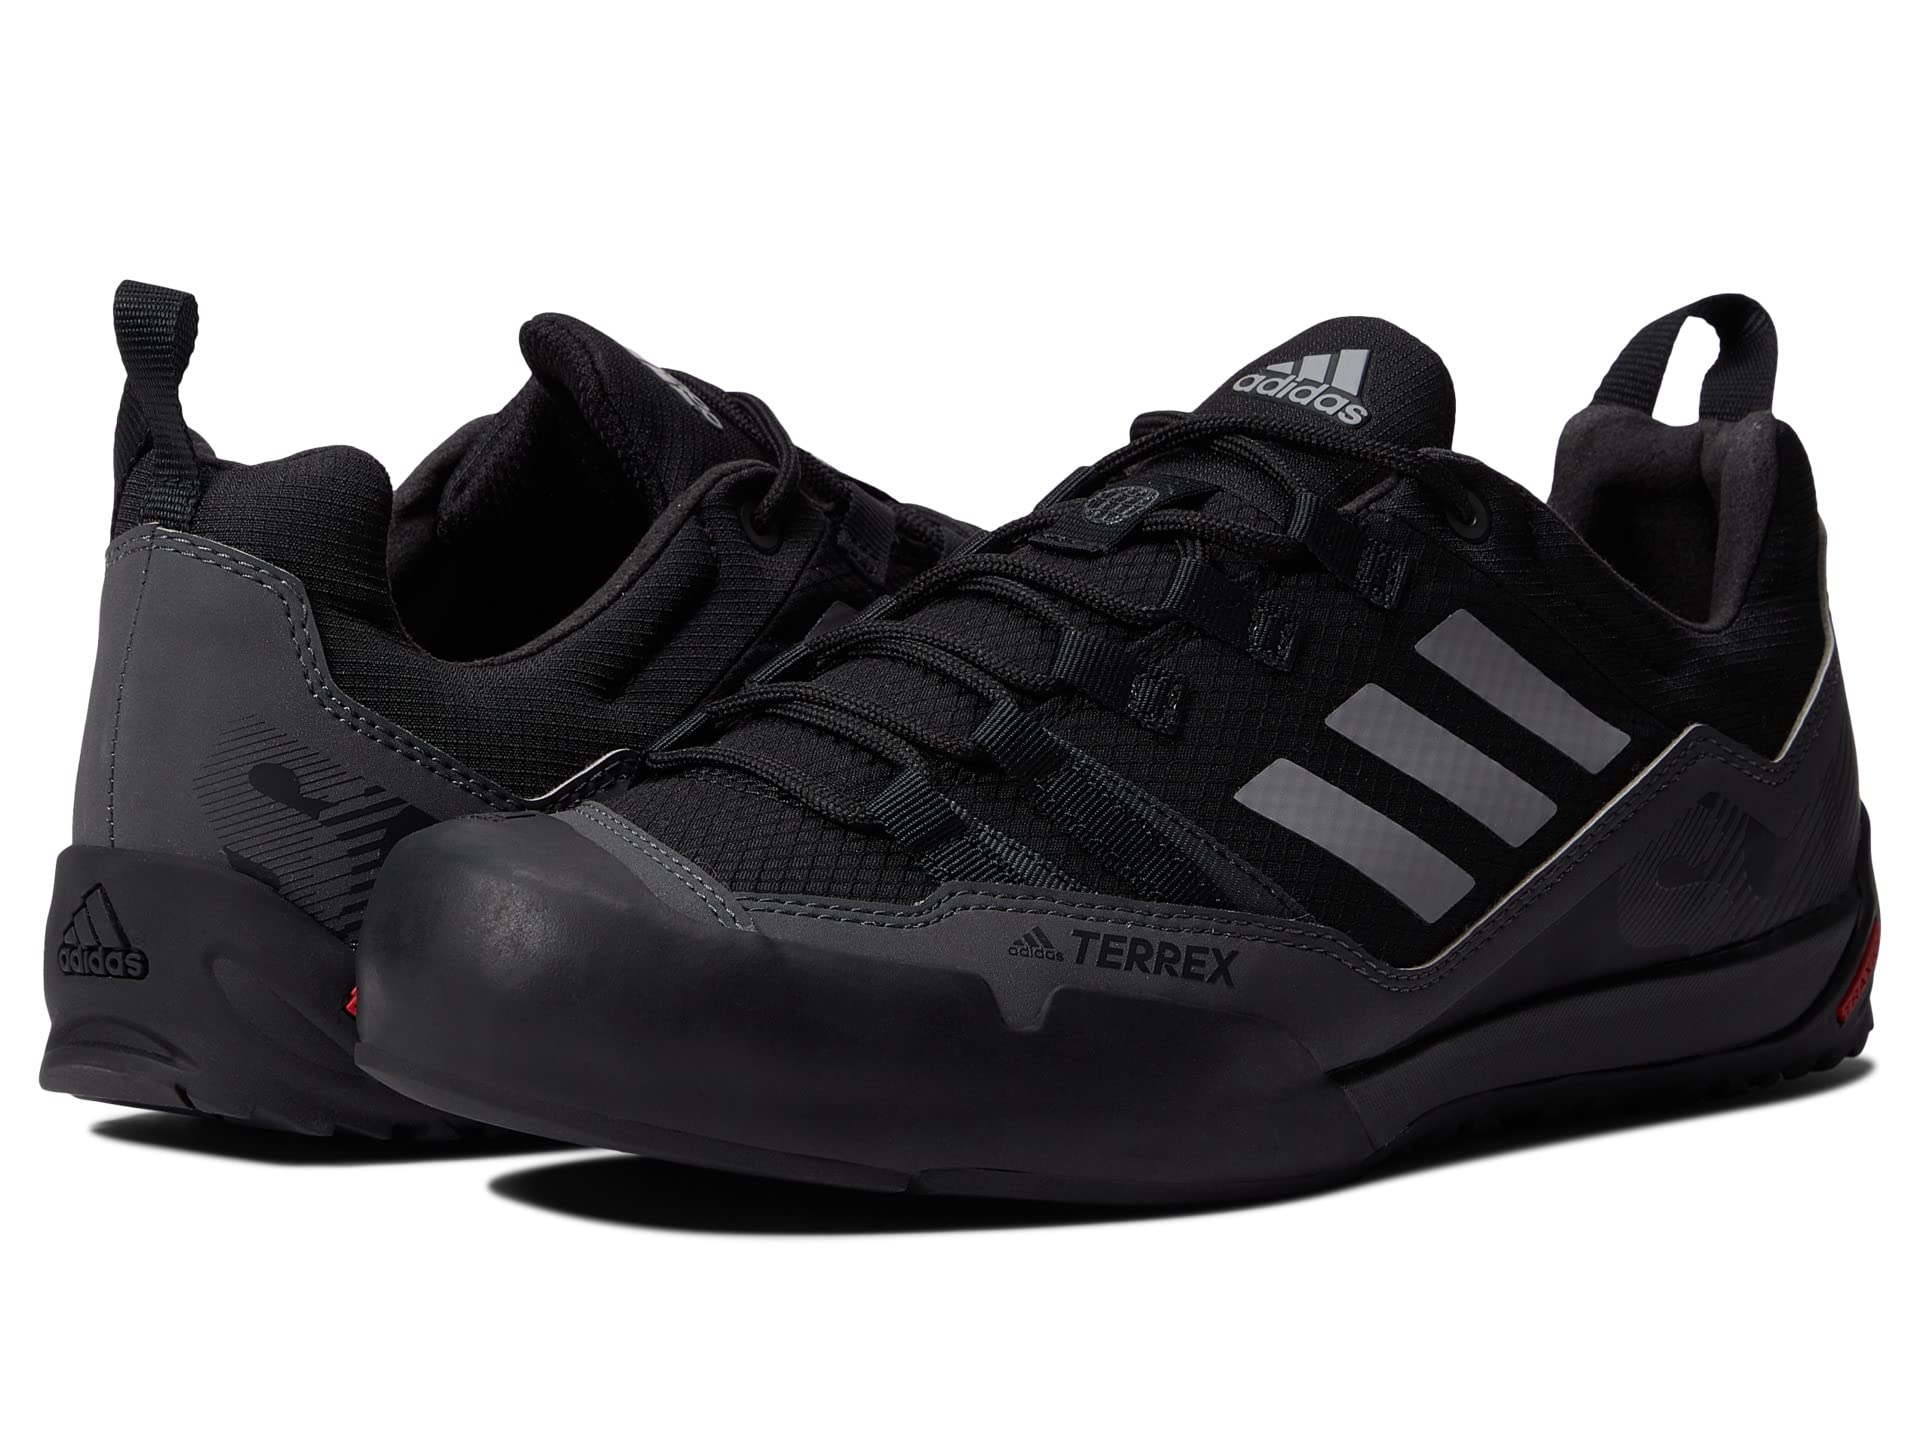 Ботинки для активного отдыха Terrex Swift Solo 2 от Adidas Adidas